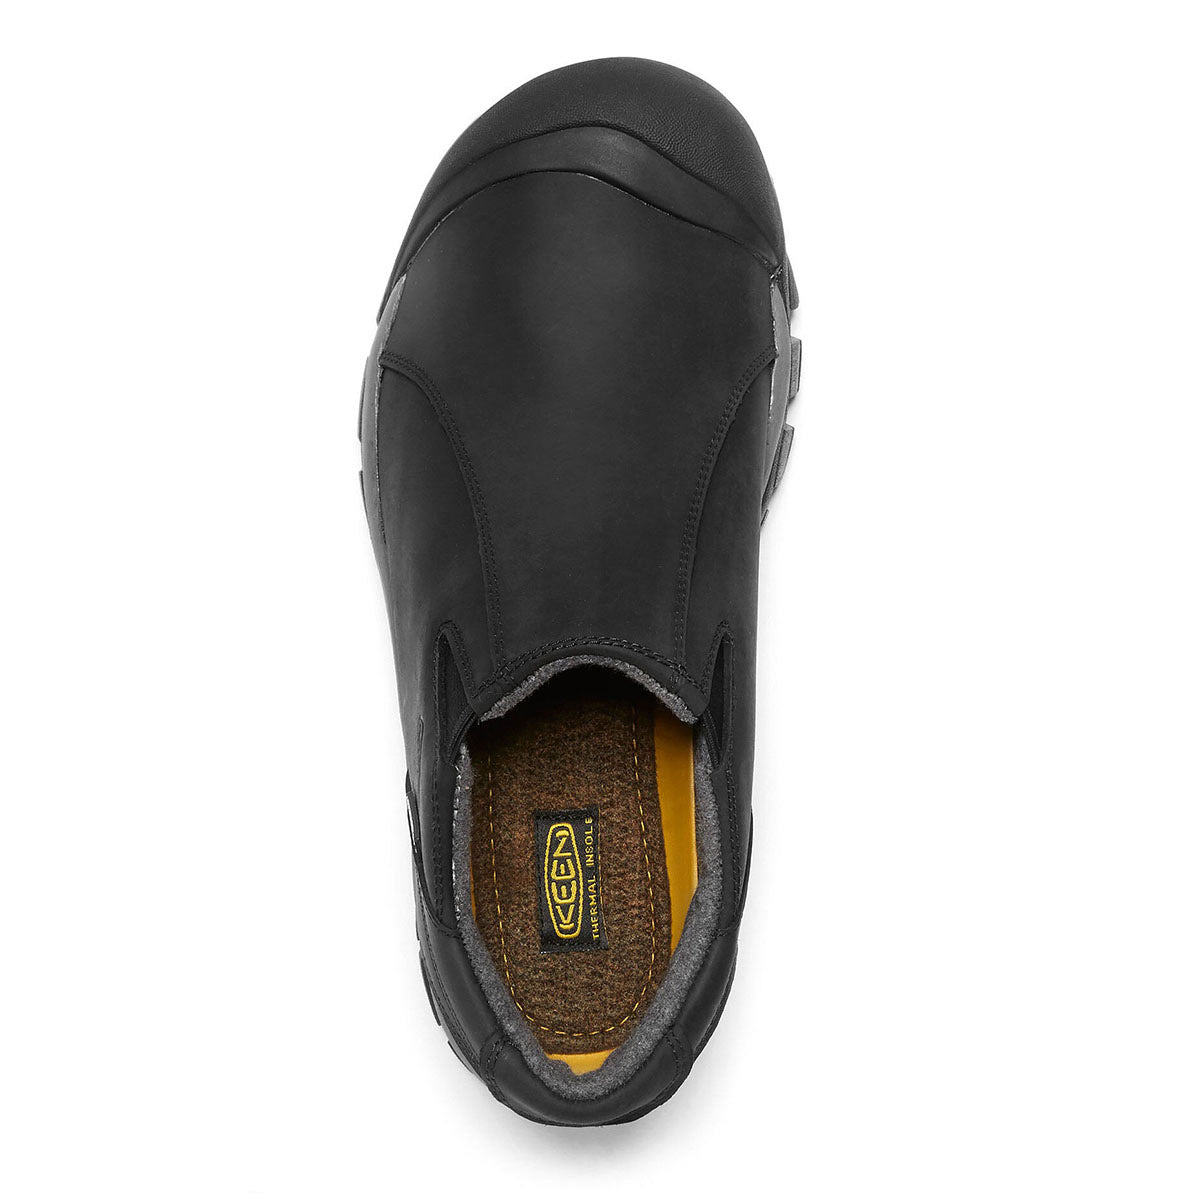 Black slip-on, KEEN BRIXEN LOW WP BLACK - MENS waterproof shoe viewed from above.